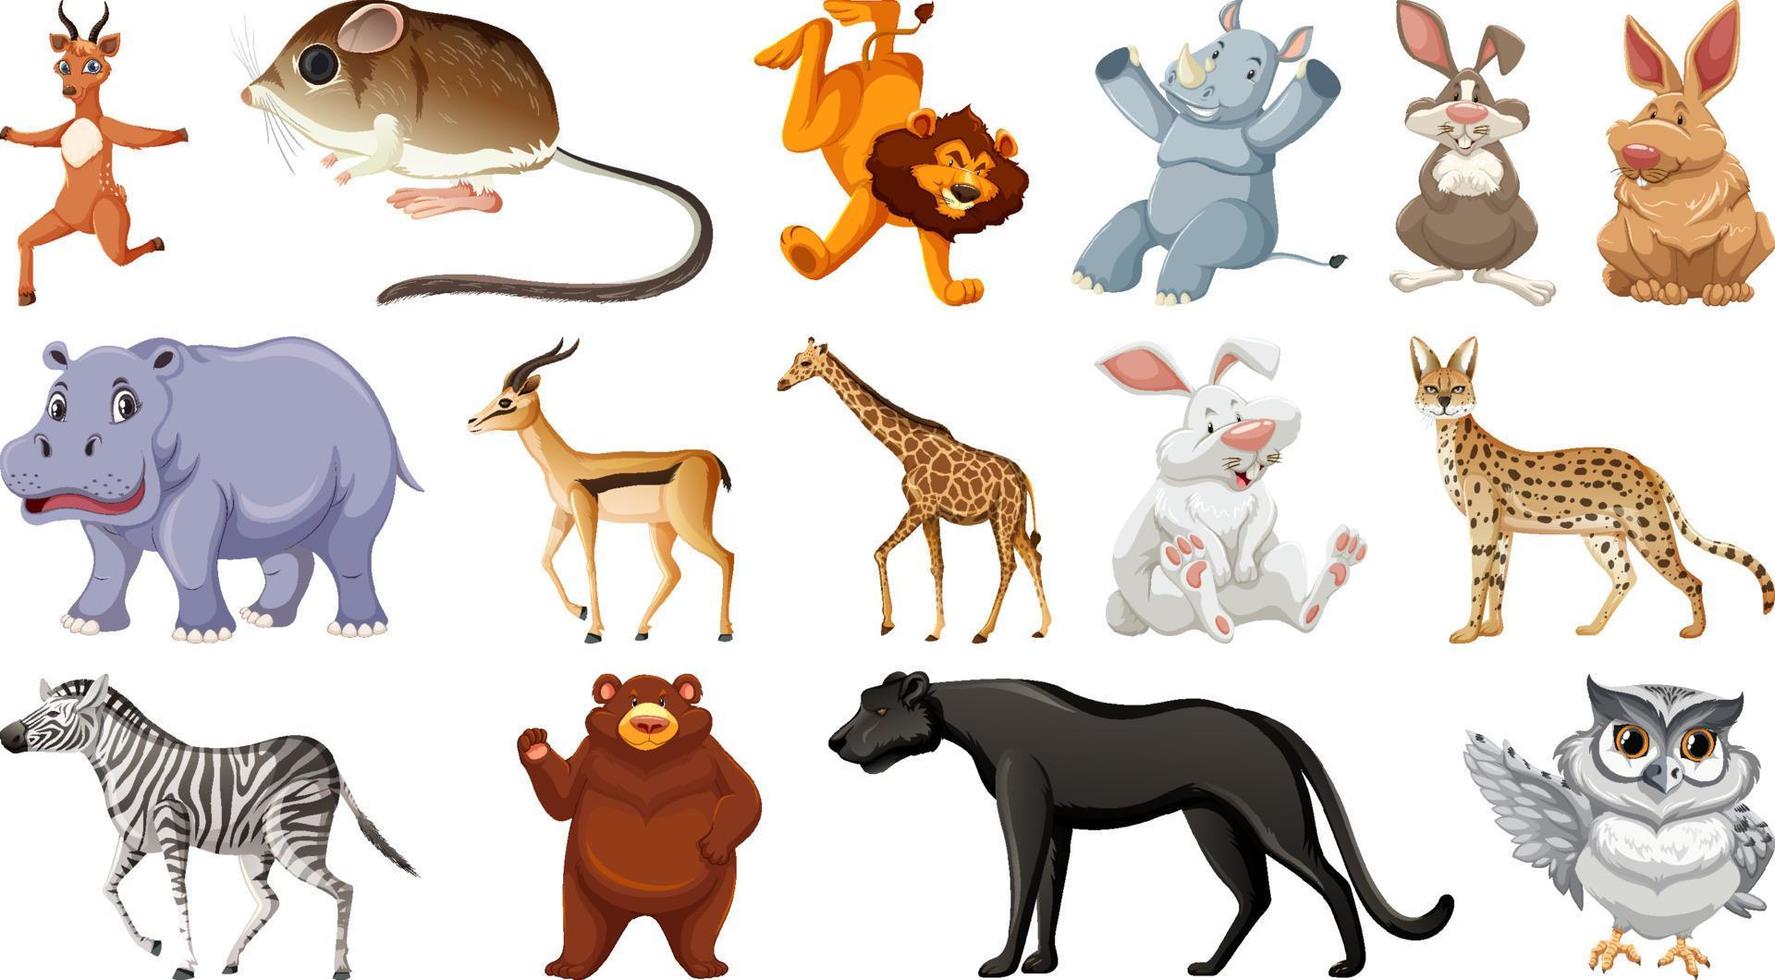 set di diversi personaggi dei cartoni animati di animali selvatici vettore